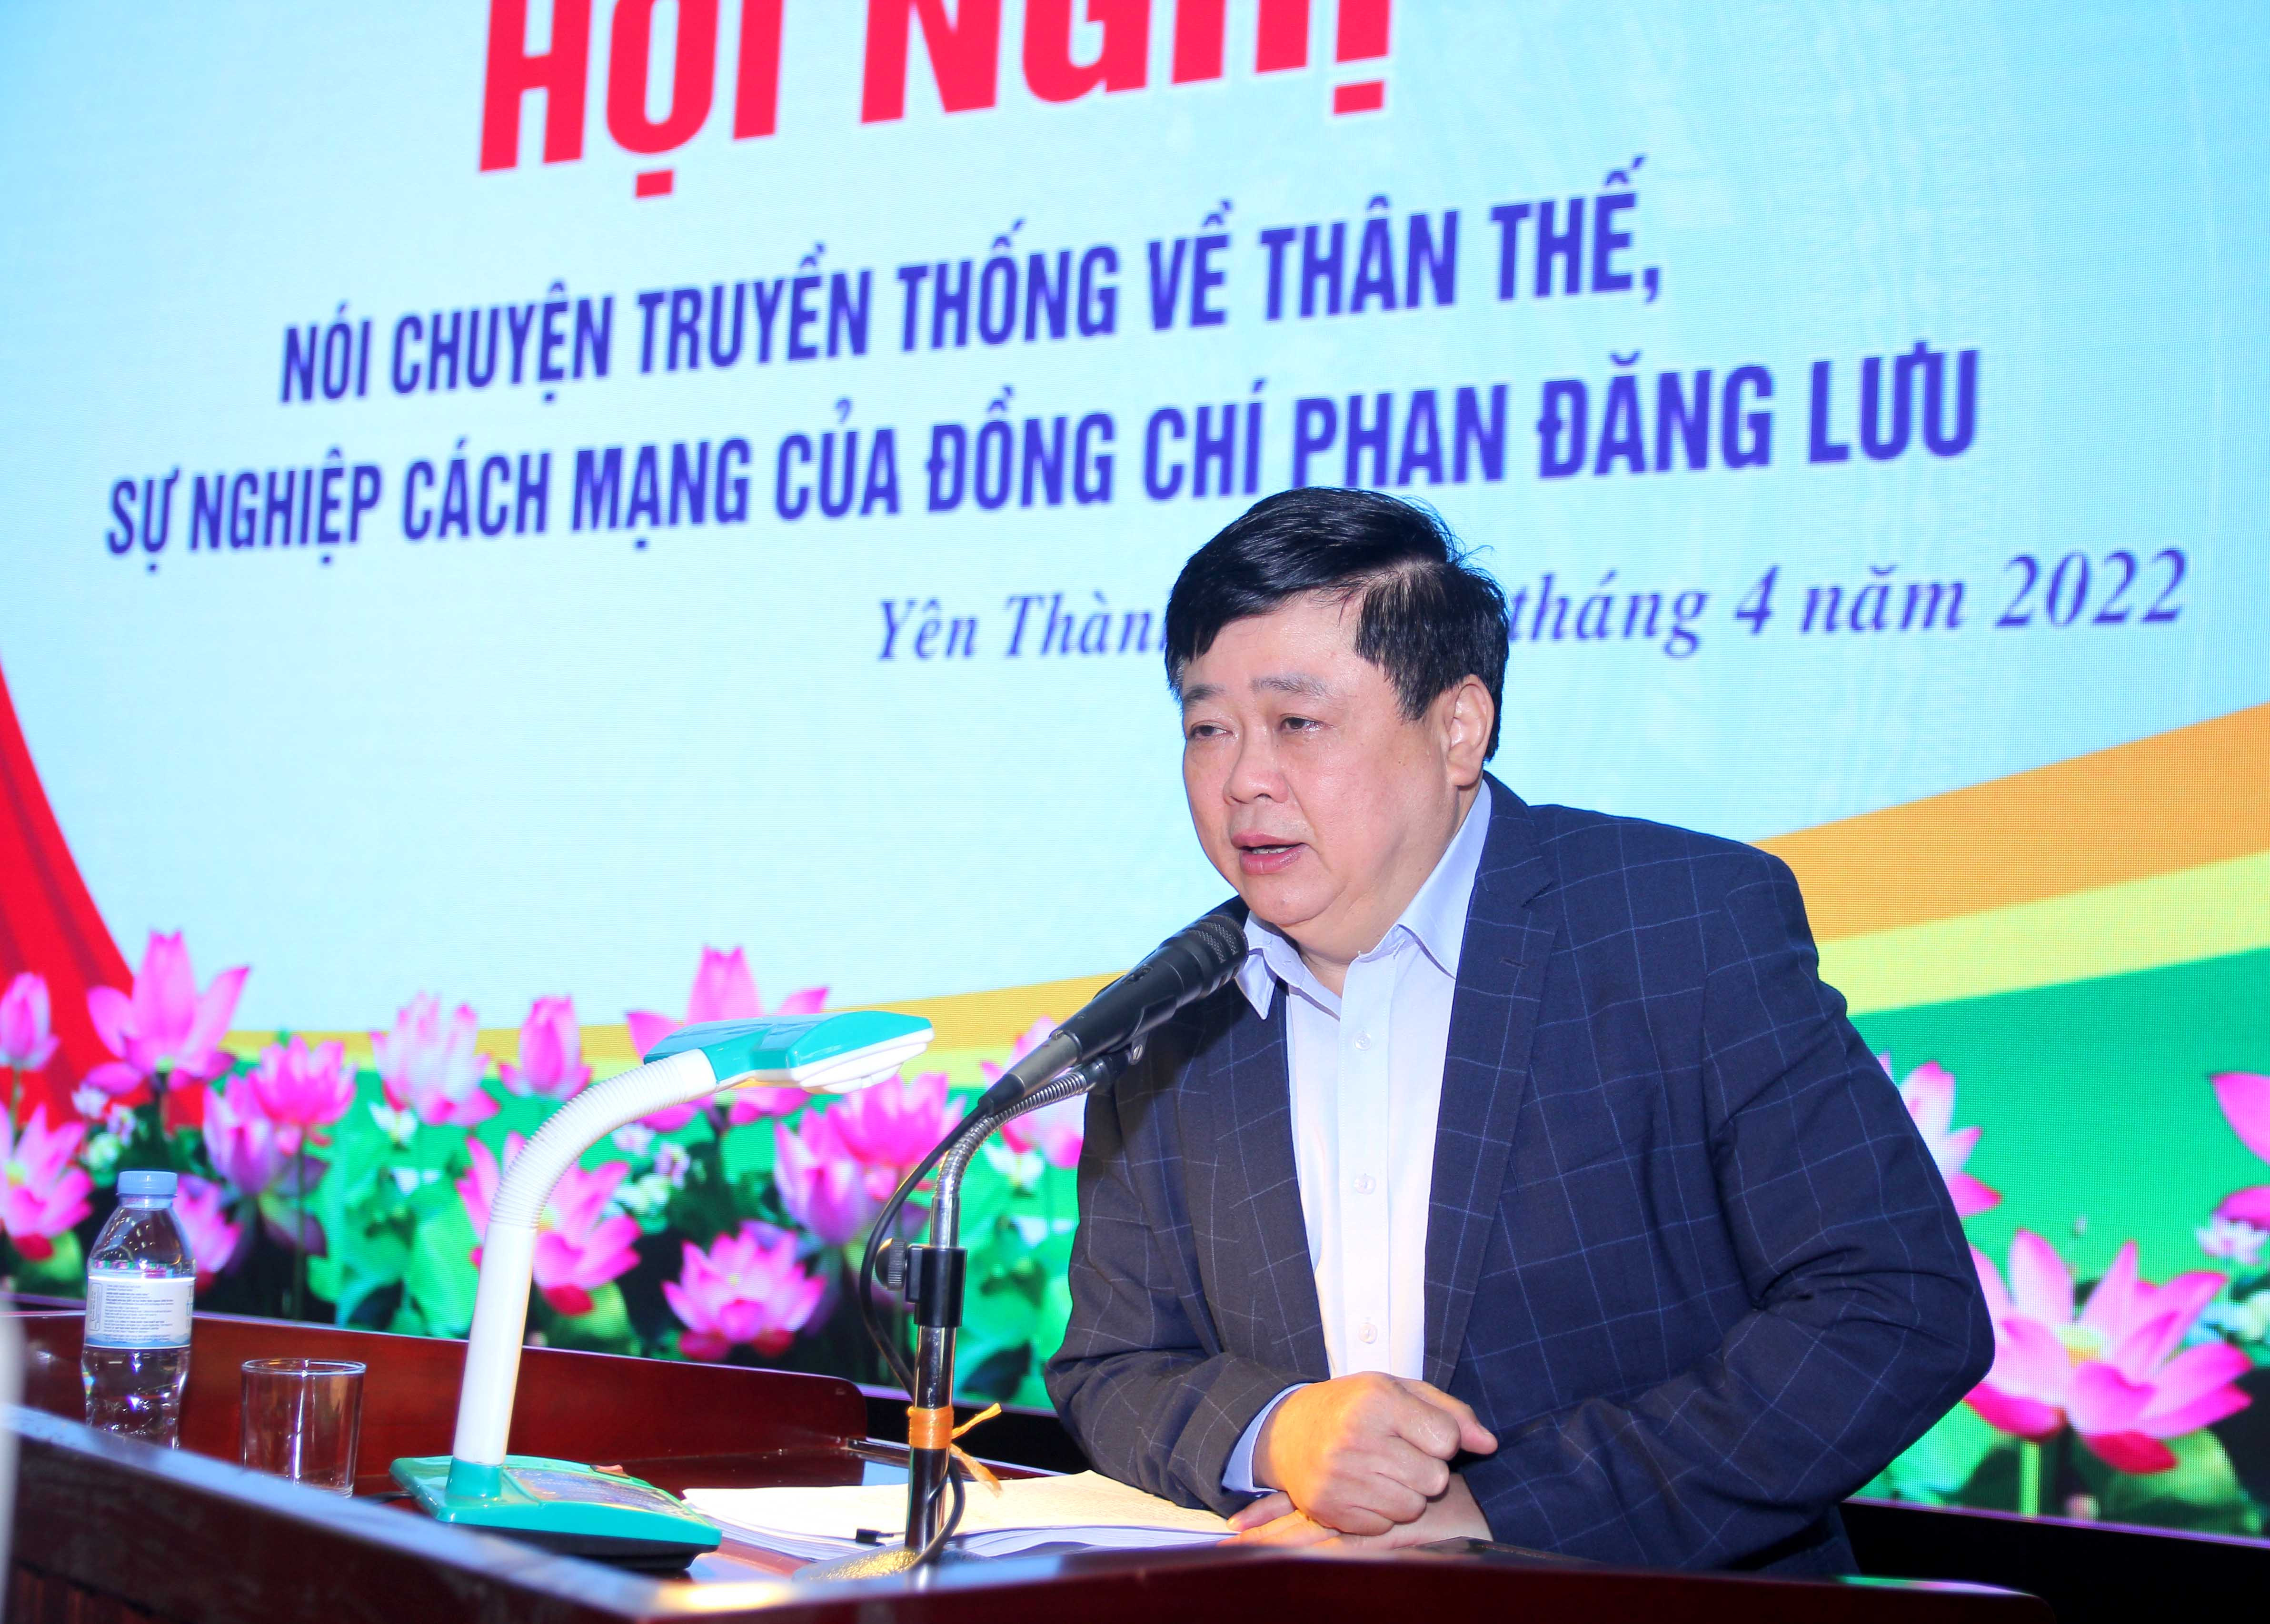 PGS.TS Nguyễn Thế Kỷ nói chuyện chuyên đề về sự nghiệp cách mạng của đồng chí Phan Đăng Lưu. Ảnh Anh Tuấn